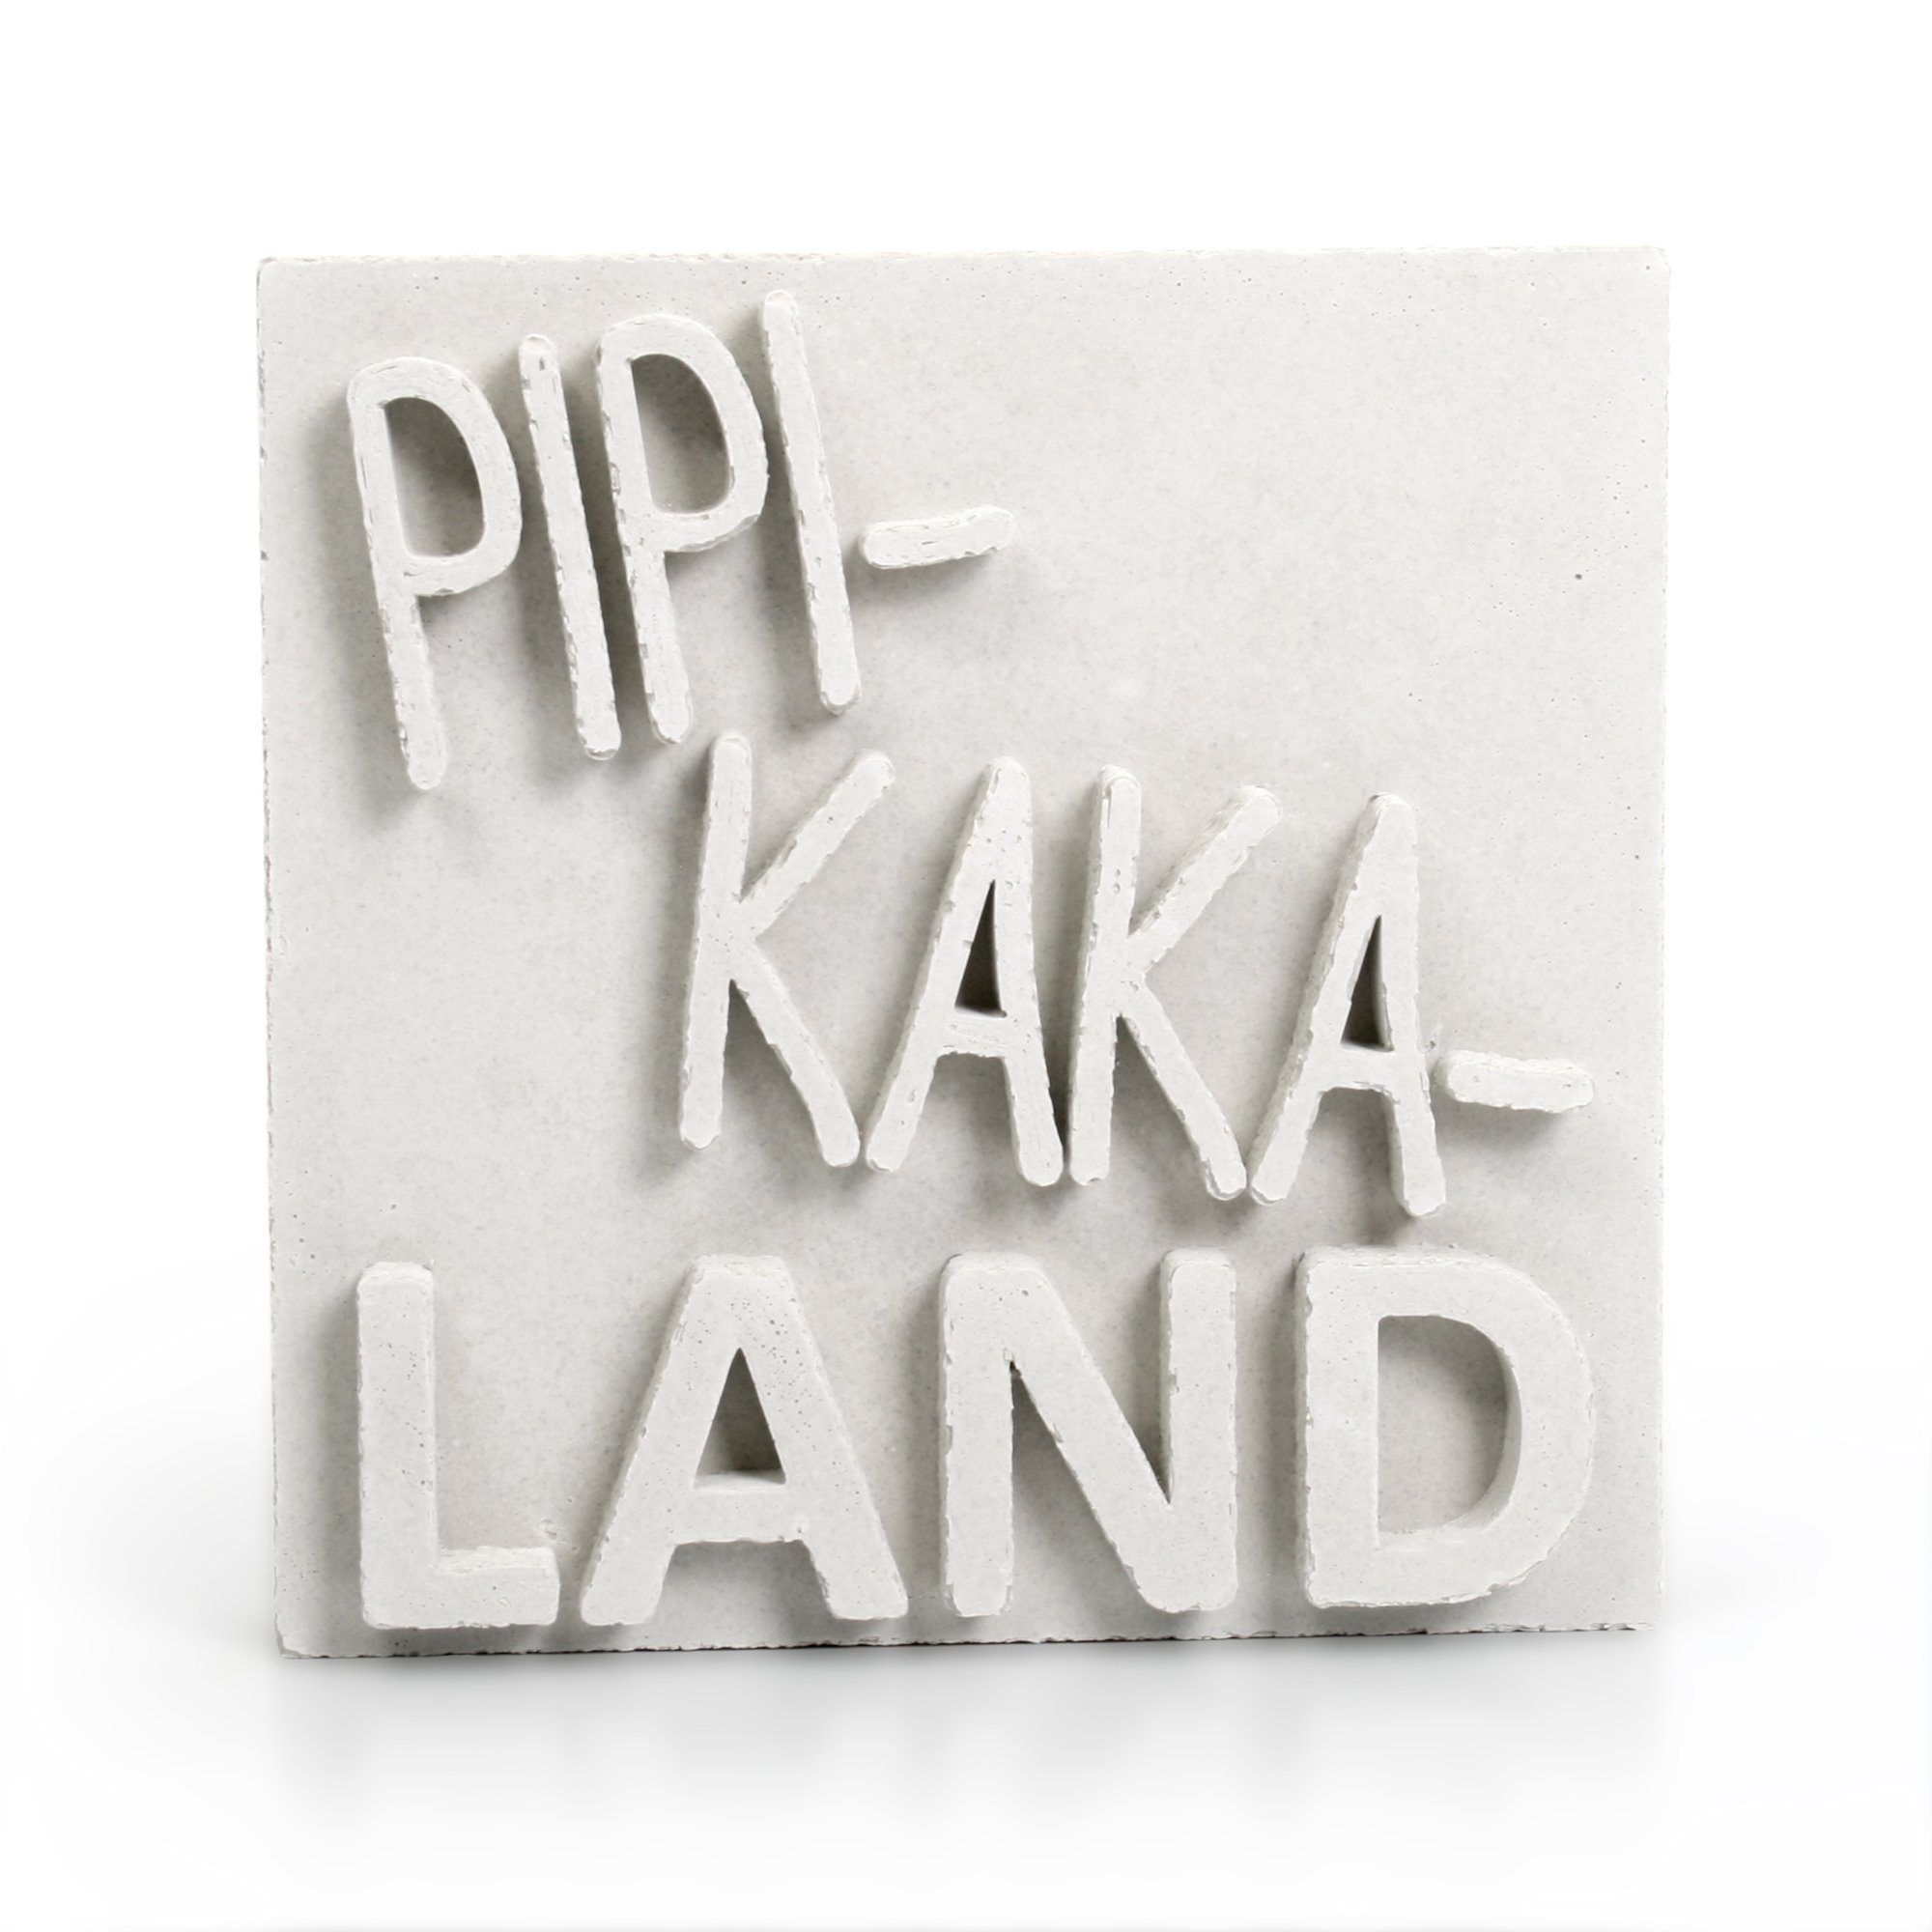 Kreative Feder Deko-Schriftzug Dekorativer AUFSTELLER „PIPI-KAKA-LAND“ handgegossen aus Beton, jedes Einzelstück ein Unikat Weiß